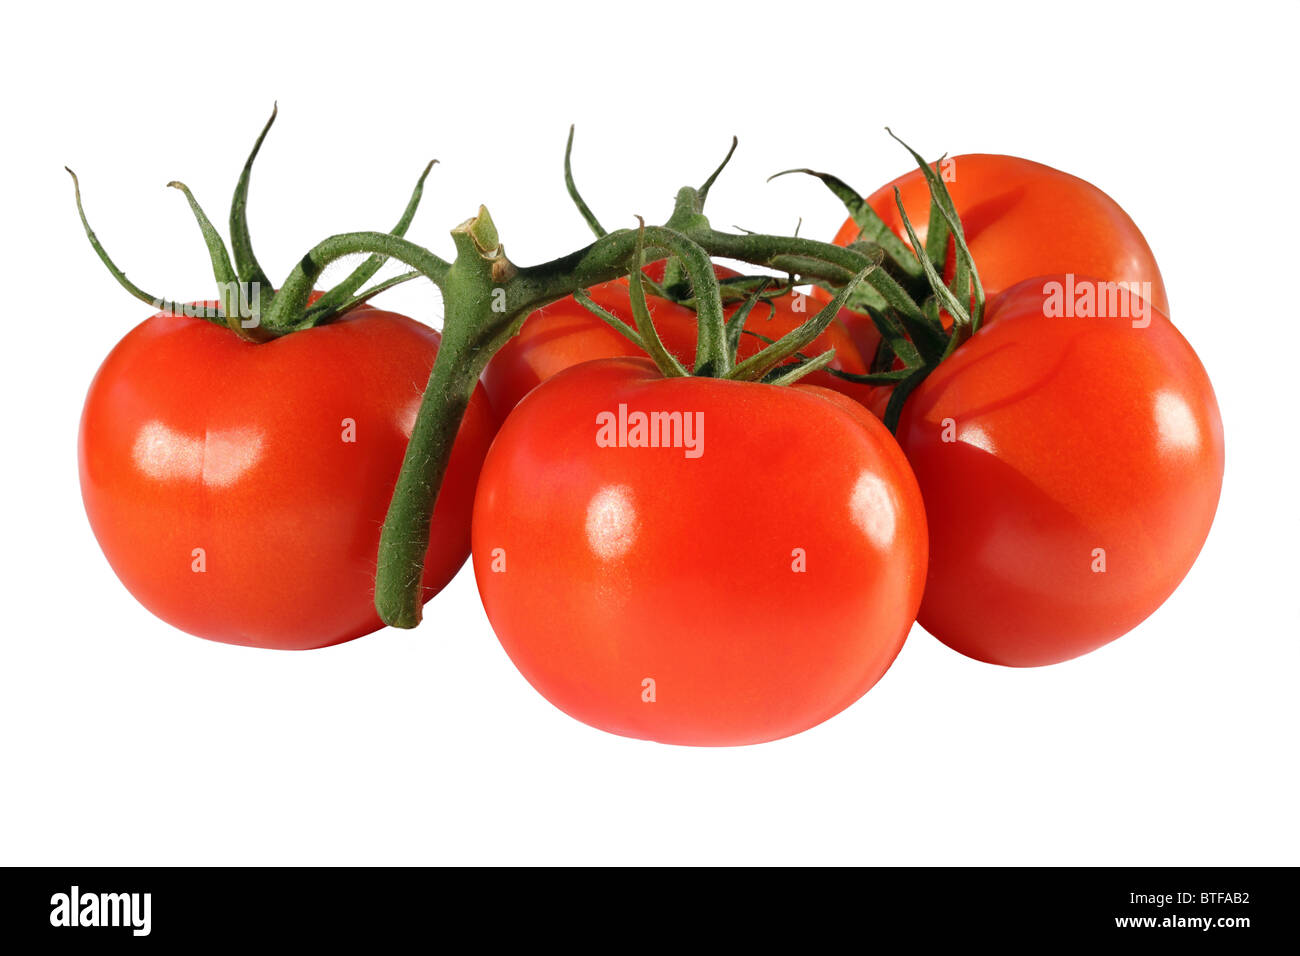 Tomatoes on vine Stock Photo